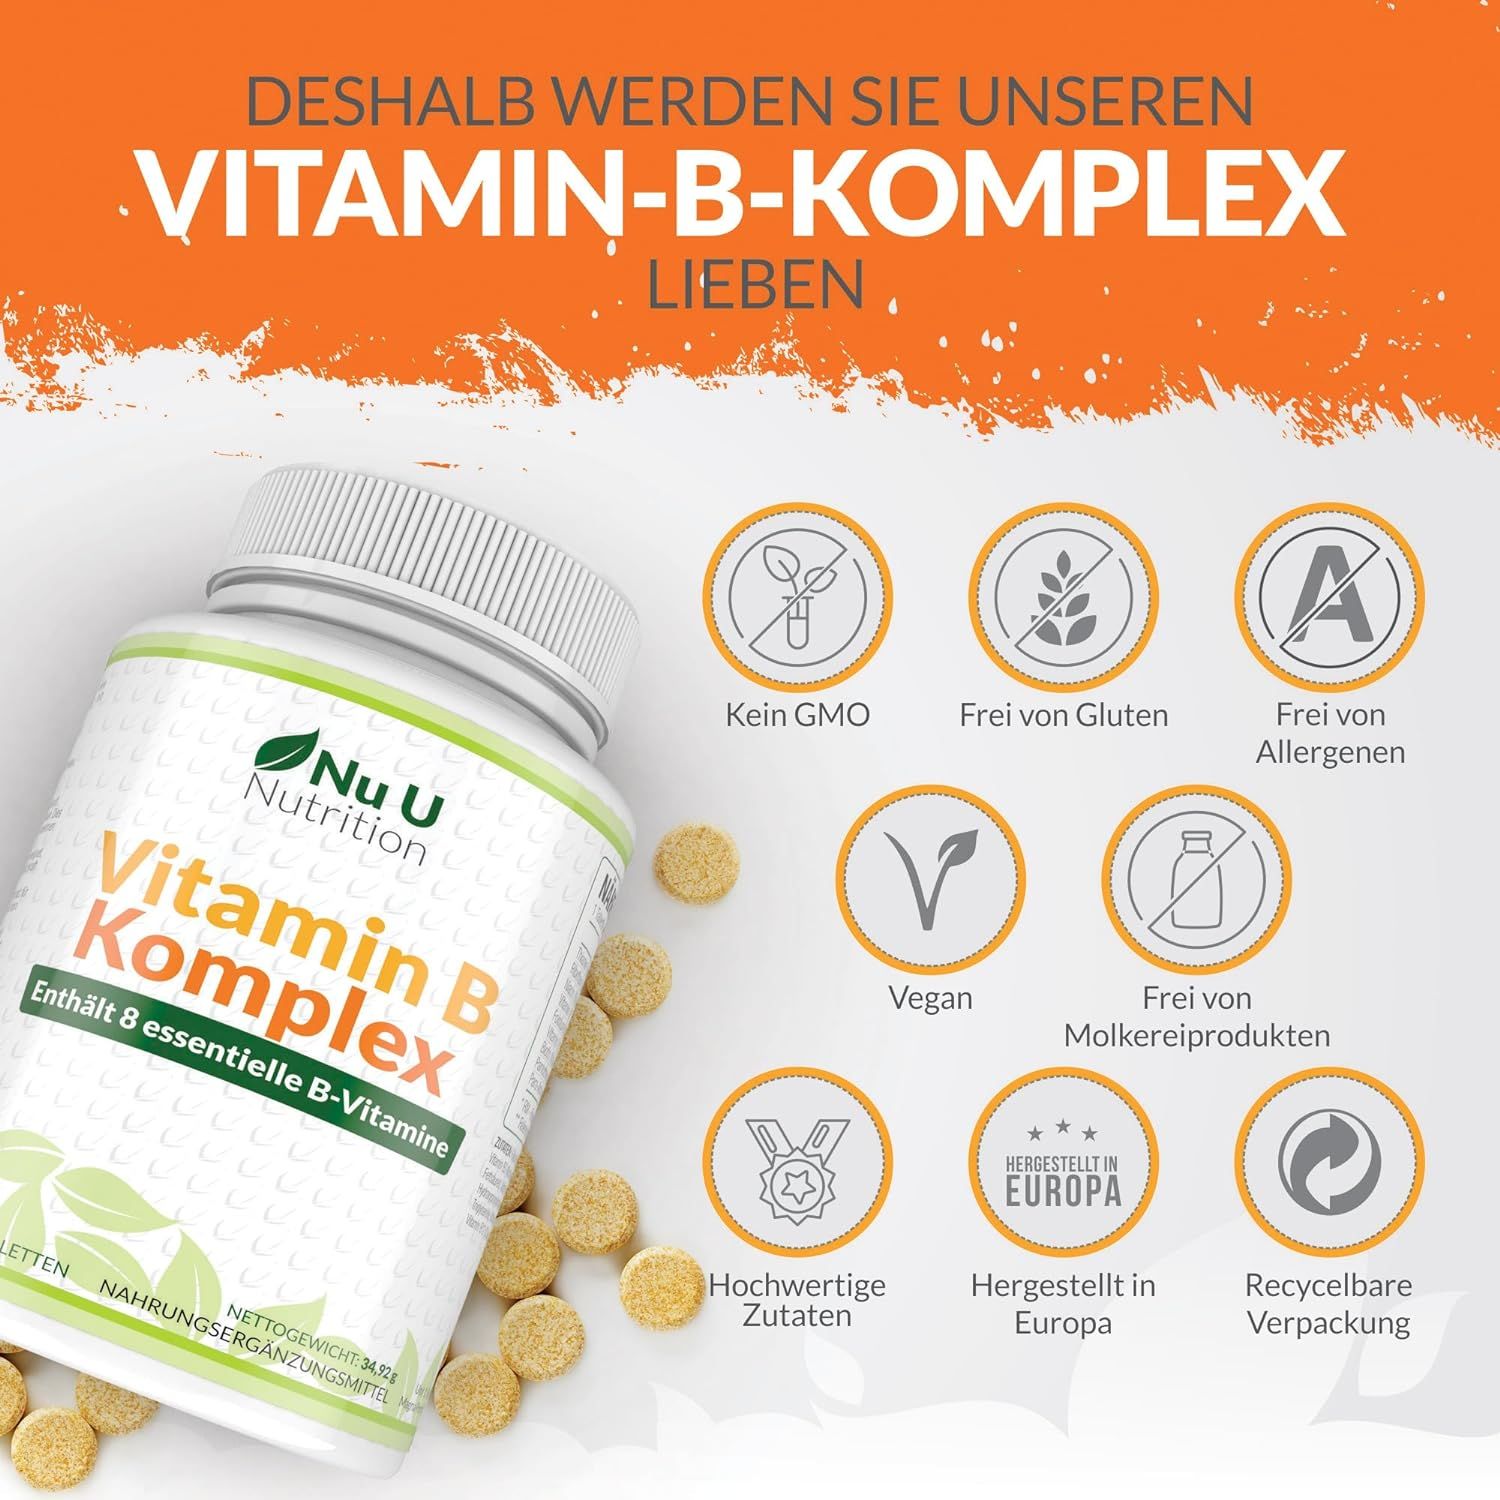 Nu U Nutrition Vitamin B Komplex Hochdosiert